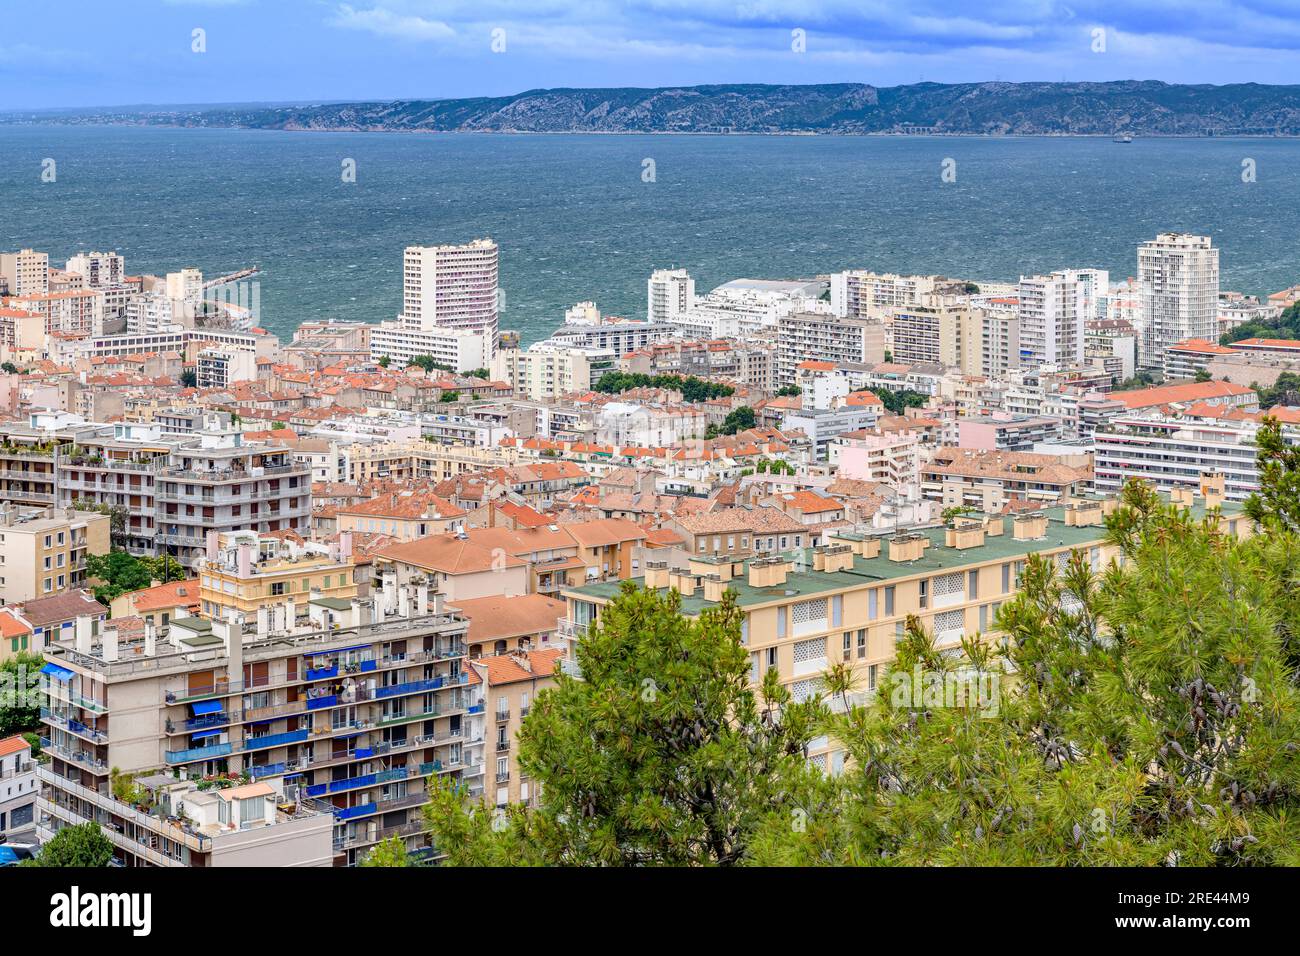 Vista sulla città di Marsiglia, scattata dalla Basilica di Notre-Dame de la Garde, con vista sui tetti in terracotta, sulle strade tortuose e sulle montagne lontane. Foto Stock